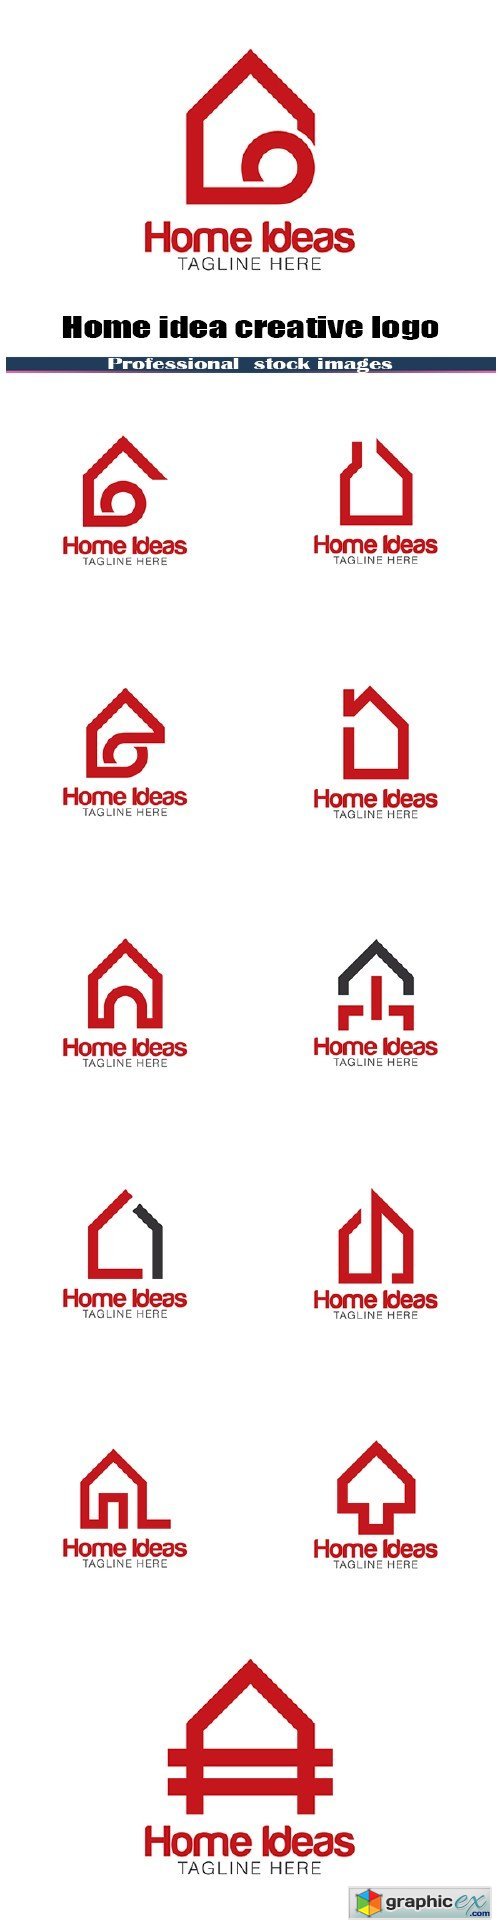 Home idea creative logo